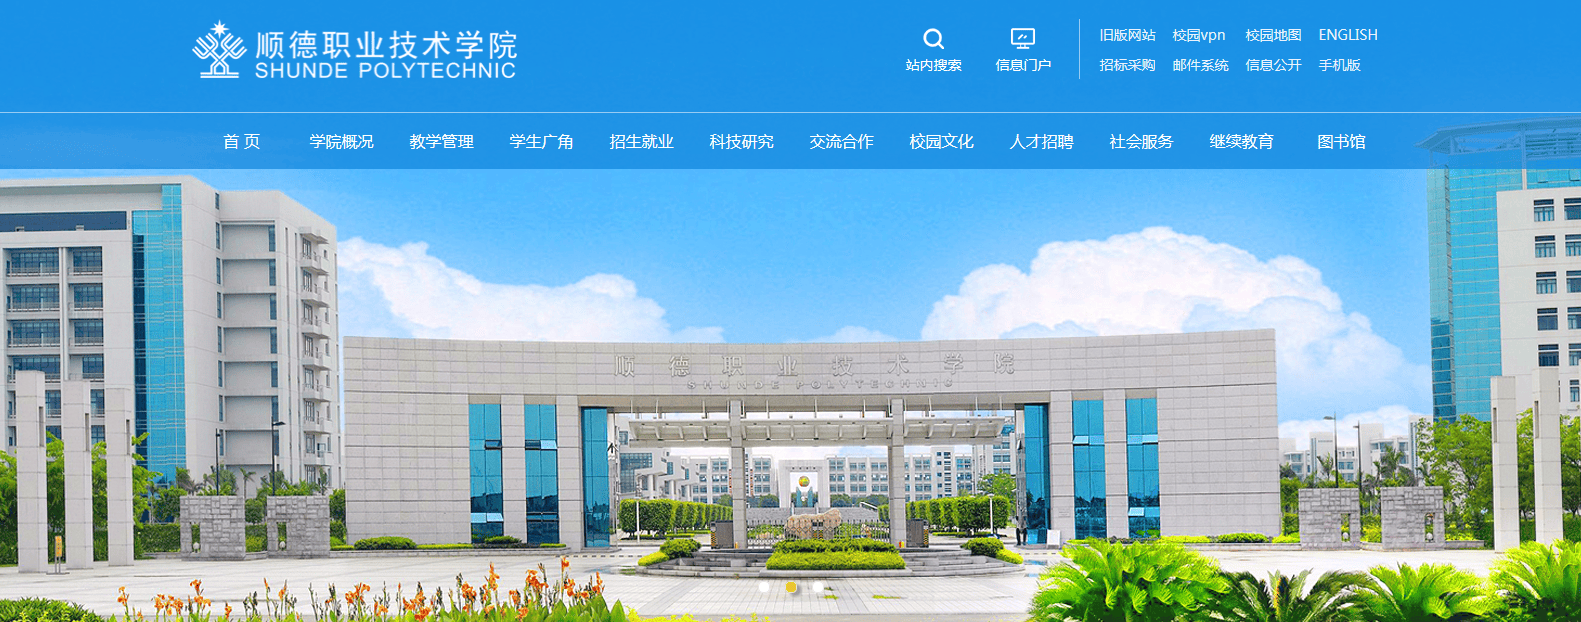 73院校简介:顺德职业技术学院(shunde polytechnic)位于广东省佛山